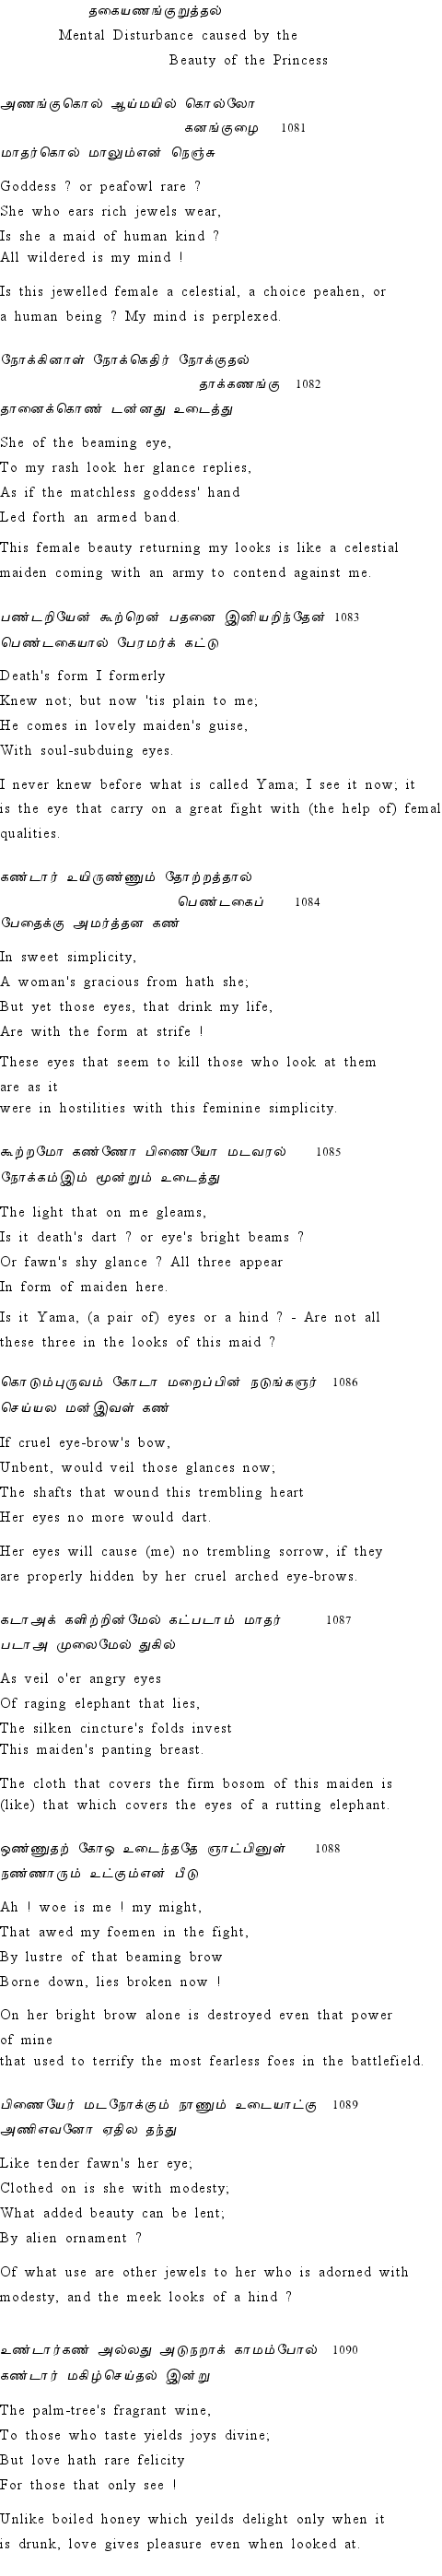 Text of Adhikaram 109